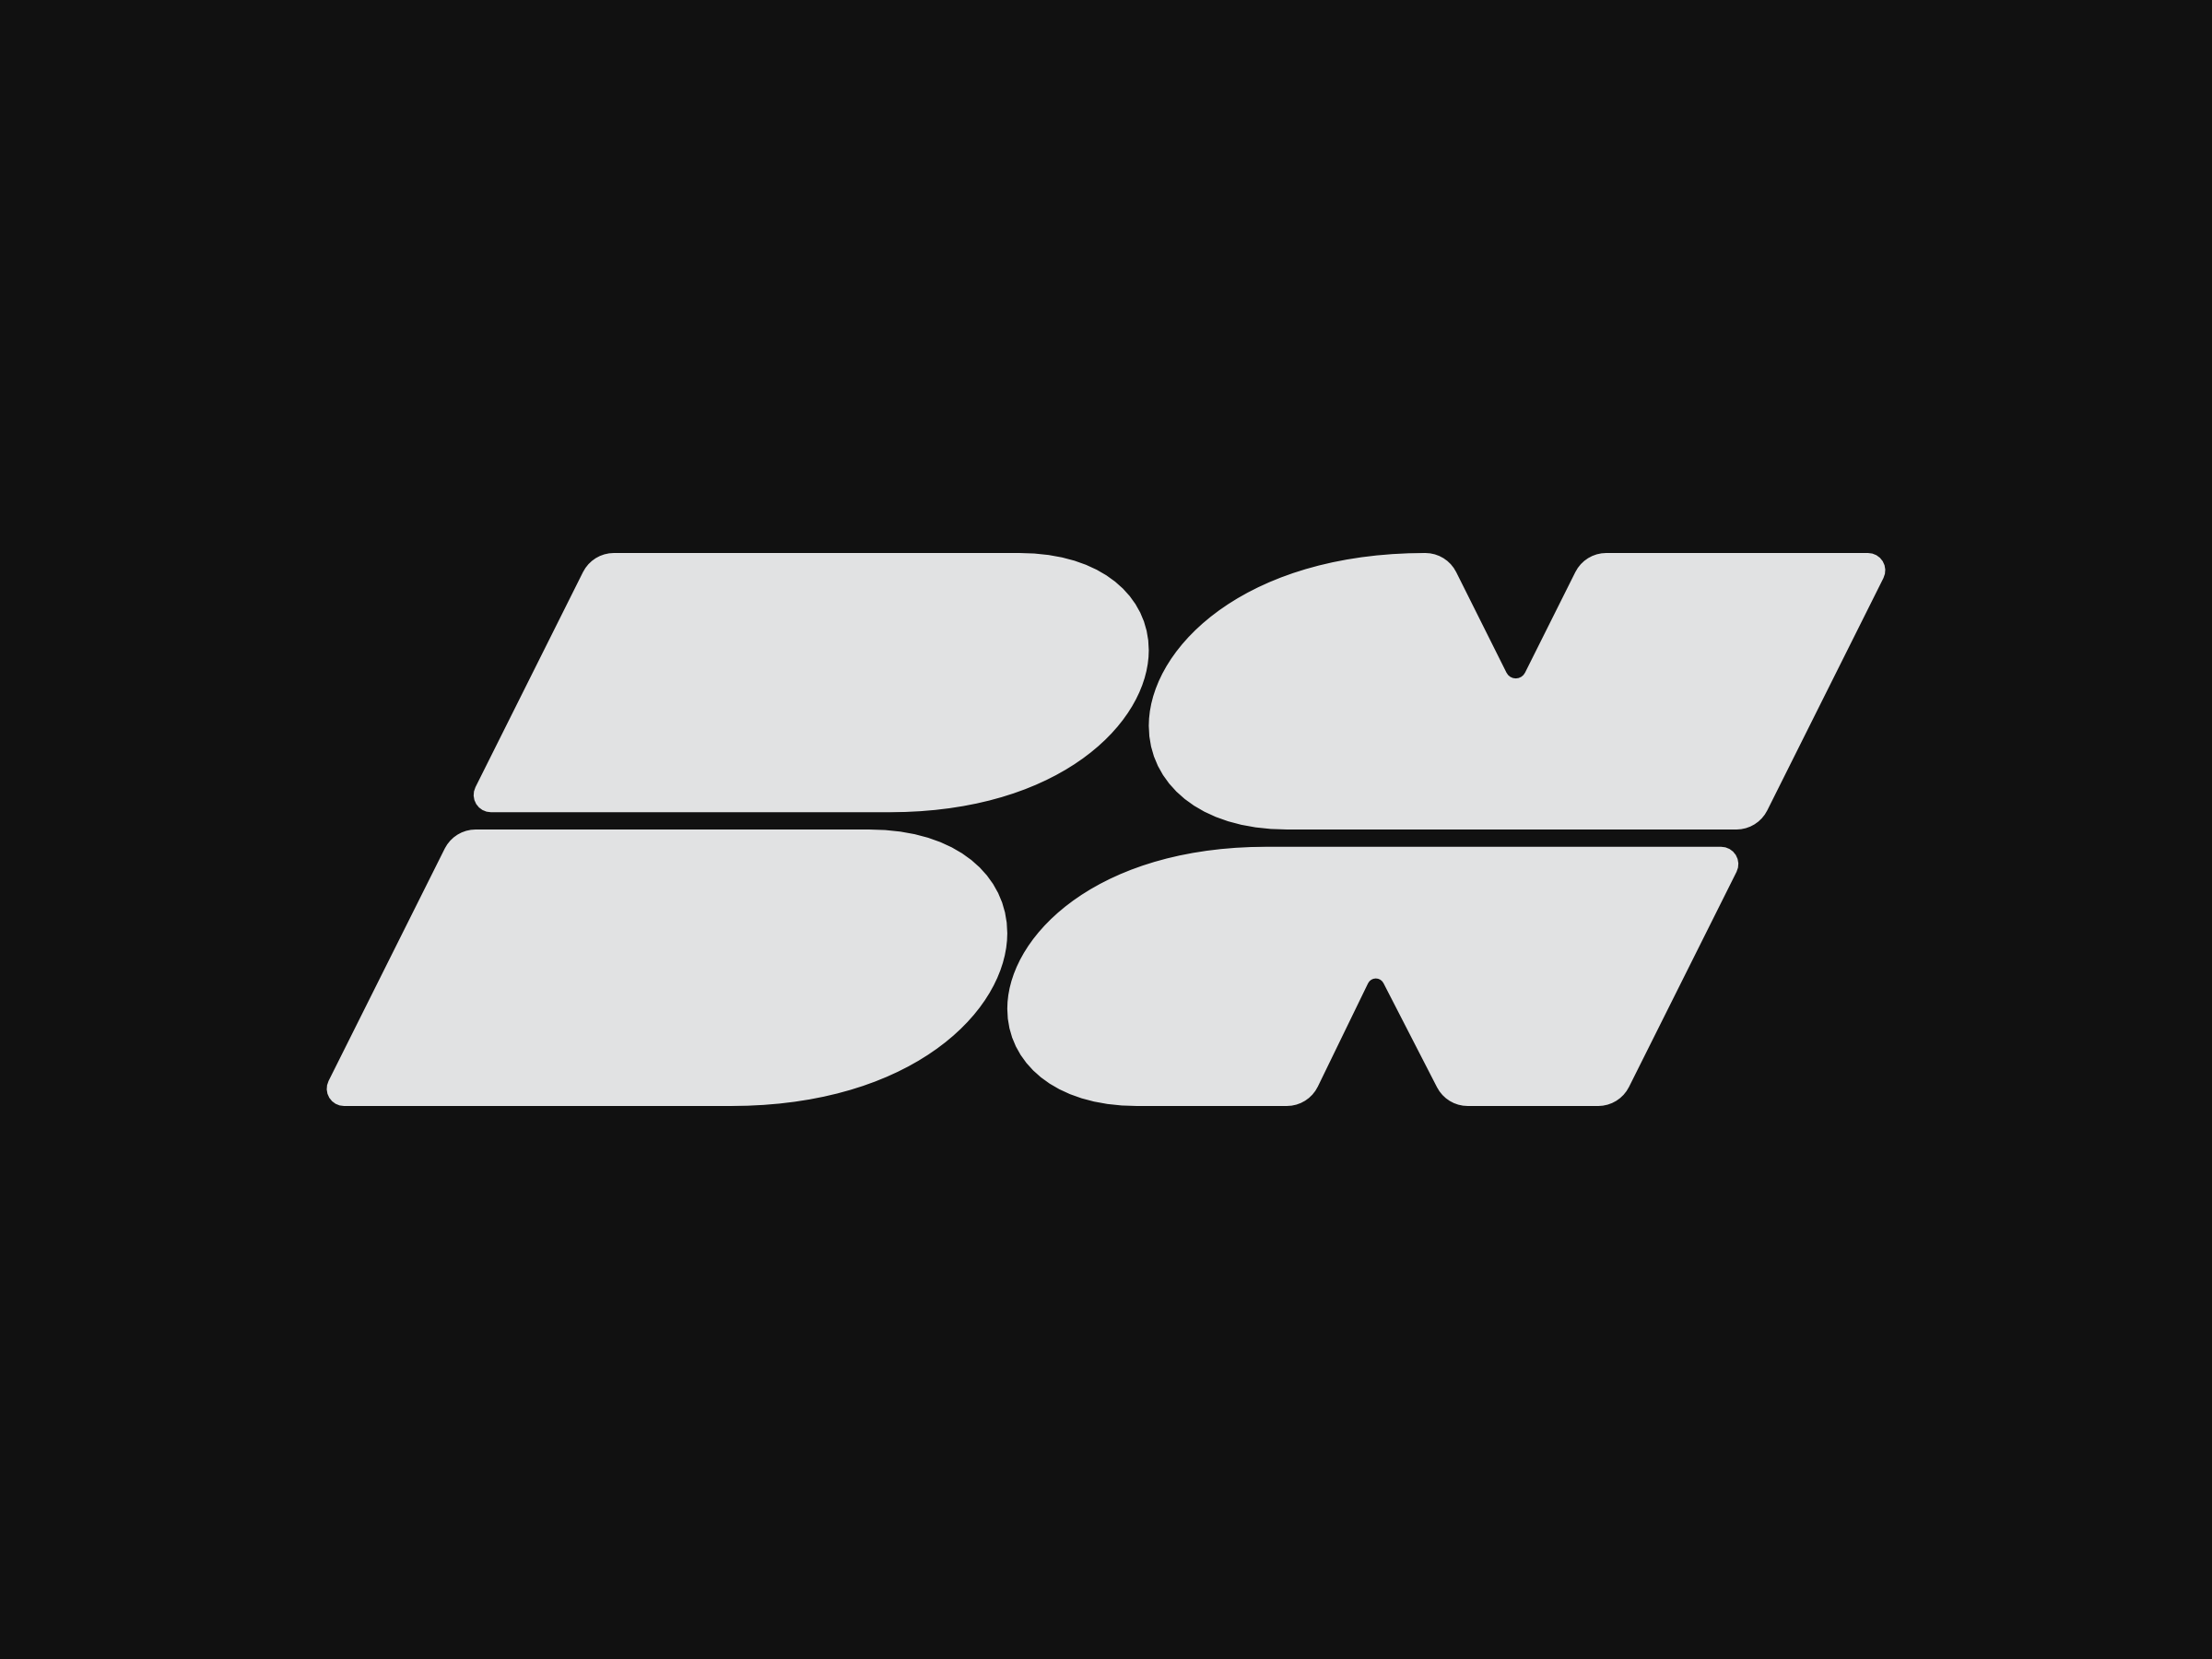 3,934 imágenes de Bn logo - Imágenes, fotos y vectores de stock |  Shutterstock